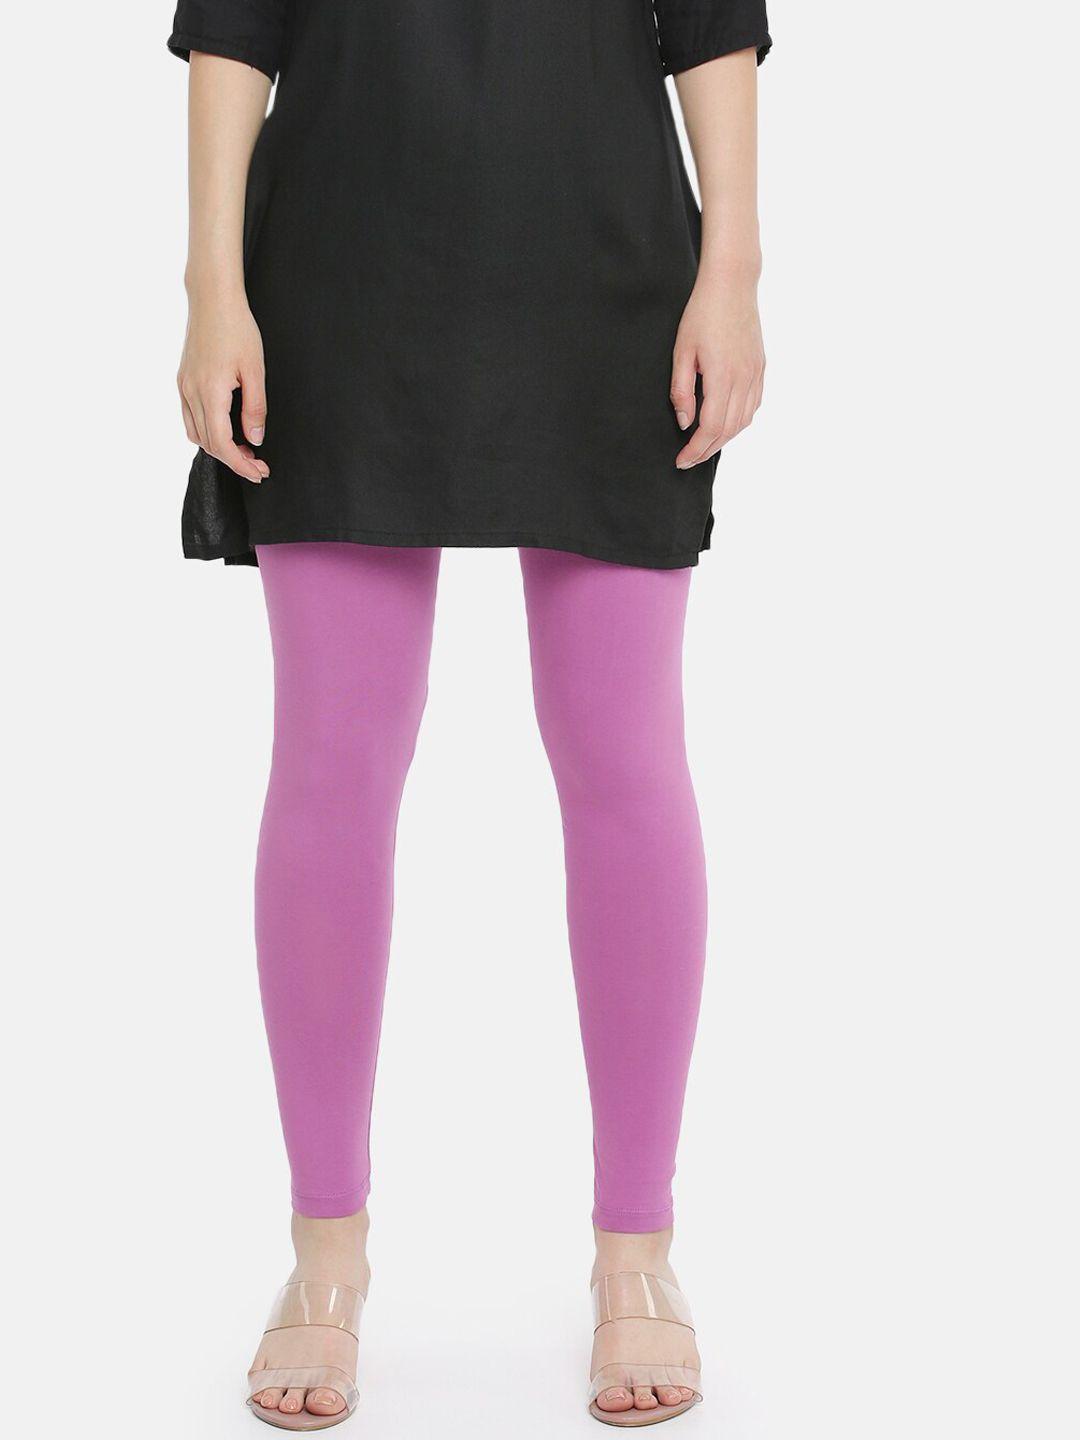 dollar-missy-women-purple-solid-ankle-length-leggings